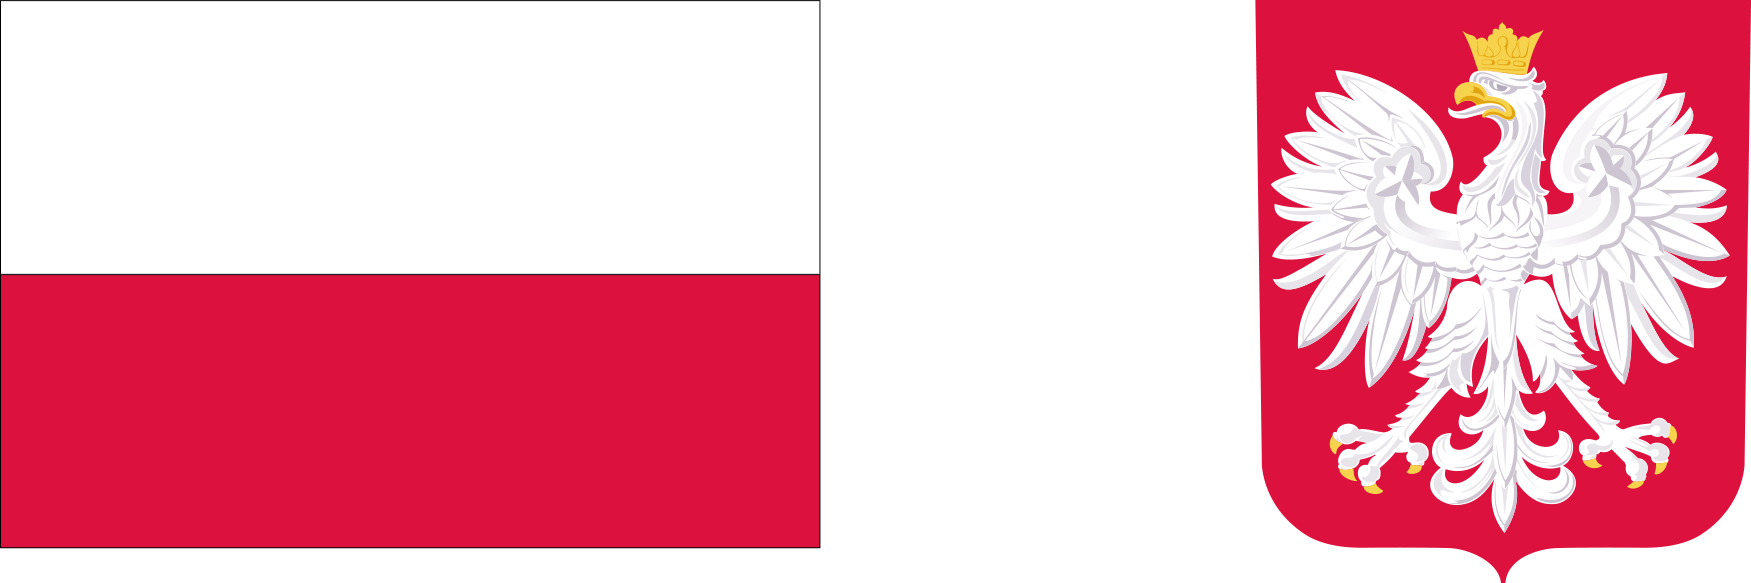 biało-czerwona flaga Polski biały orzeł w koronie na czerwonym tle godło Polski